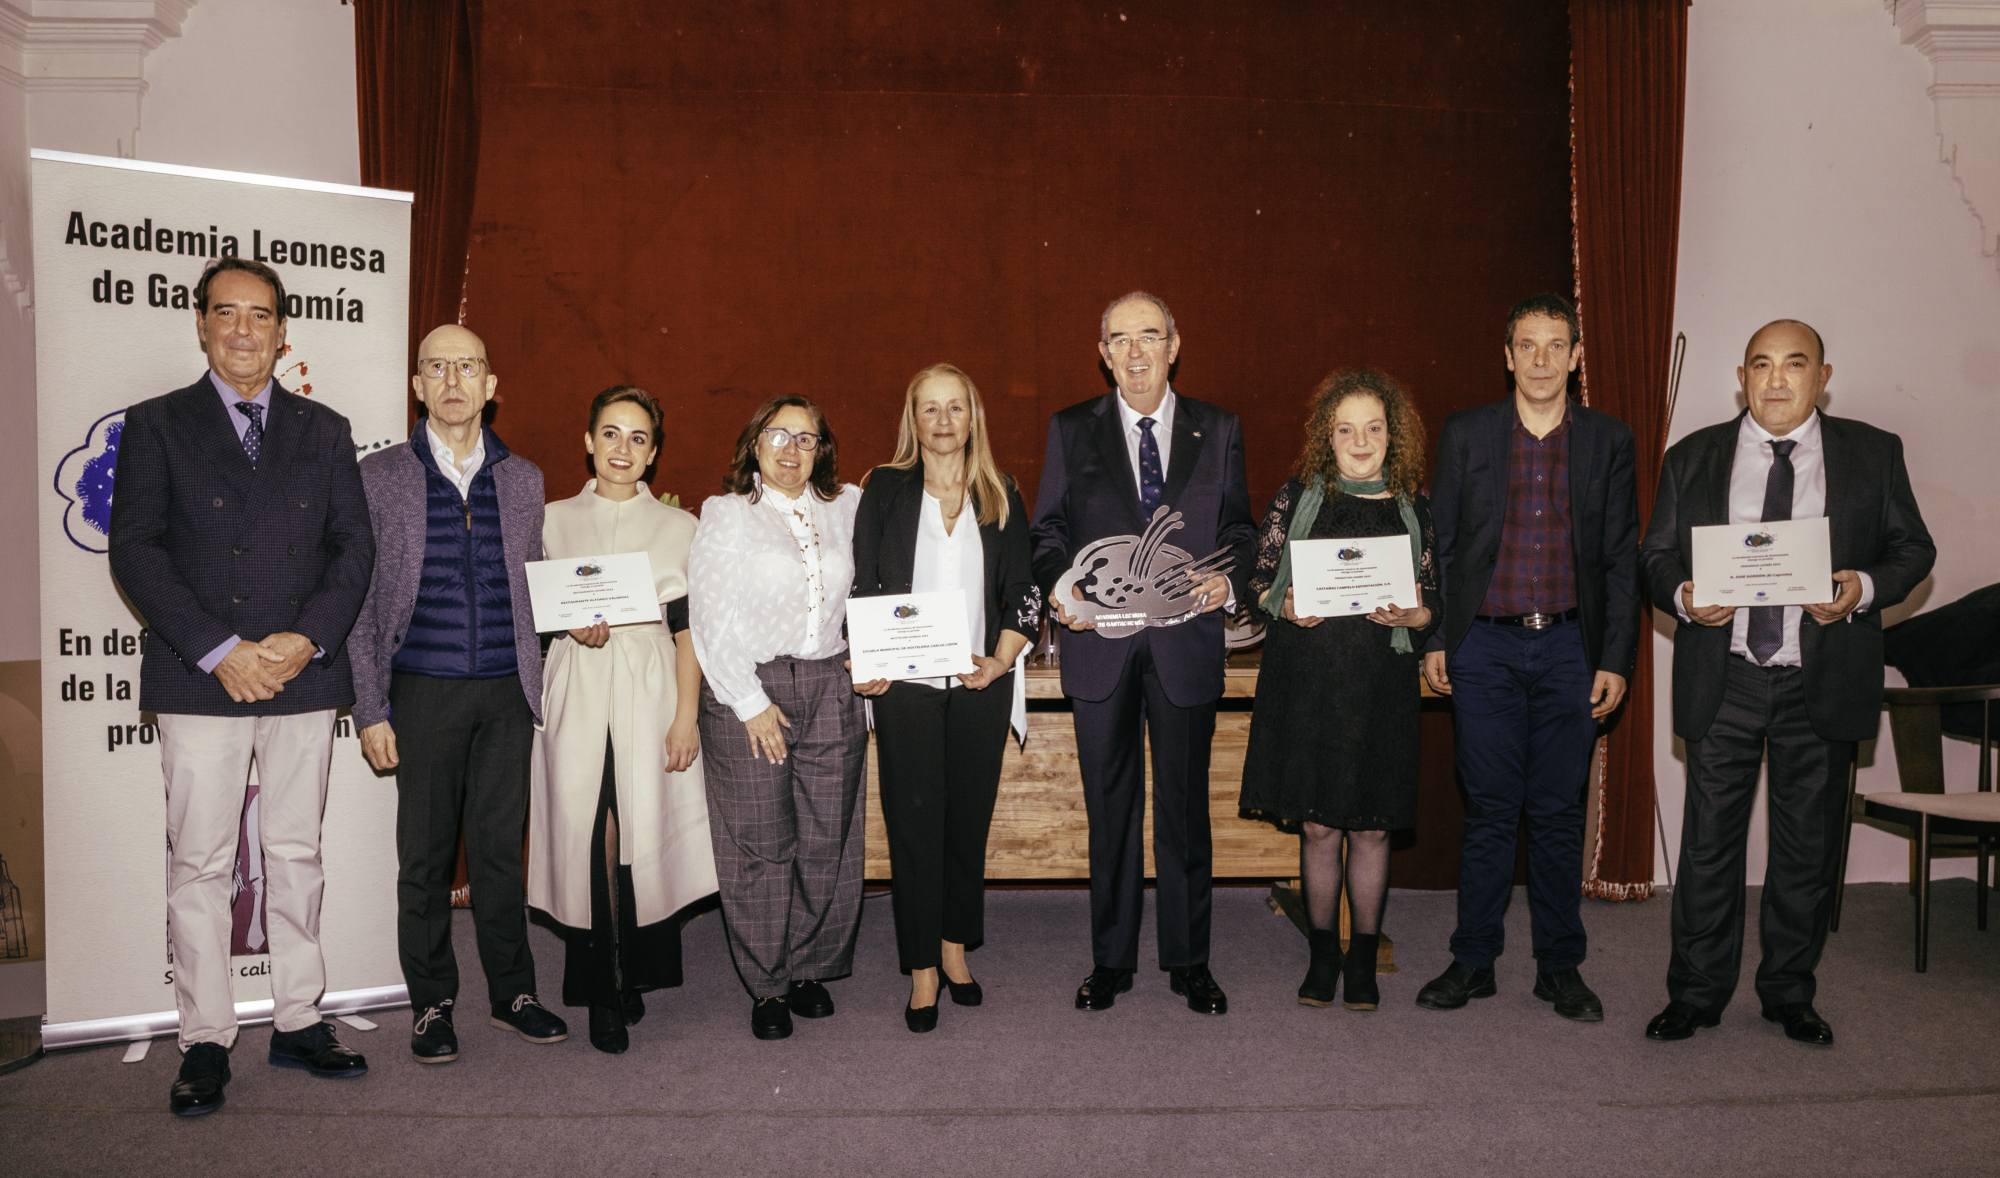 La Academia Leonesa de Gastronomía entrega sus premios en la Real Colegiata de San Isidoro 1